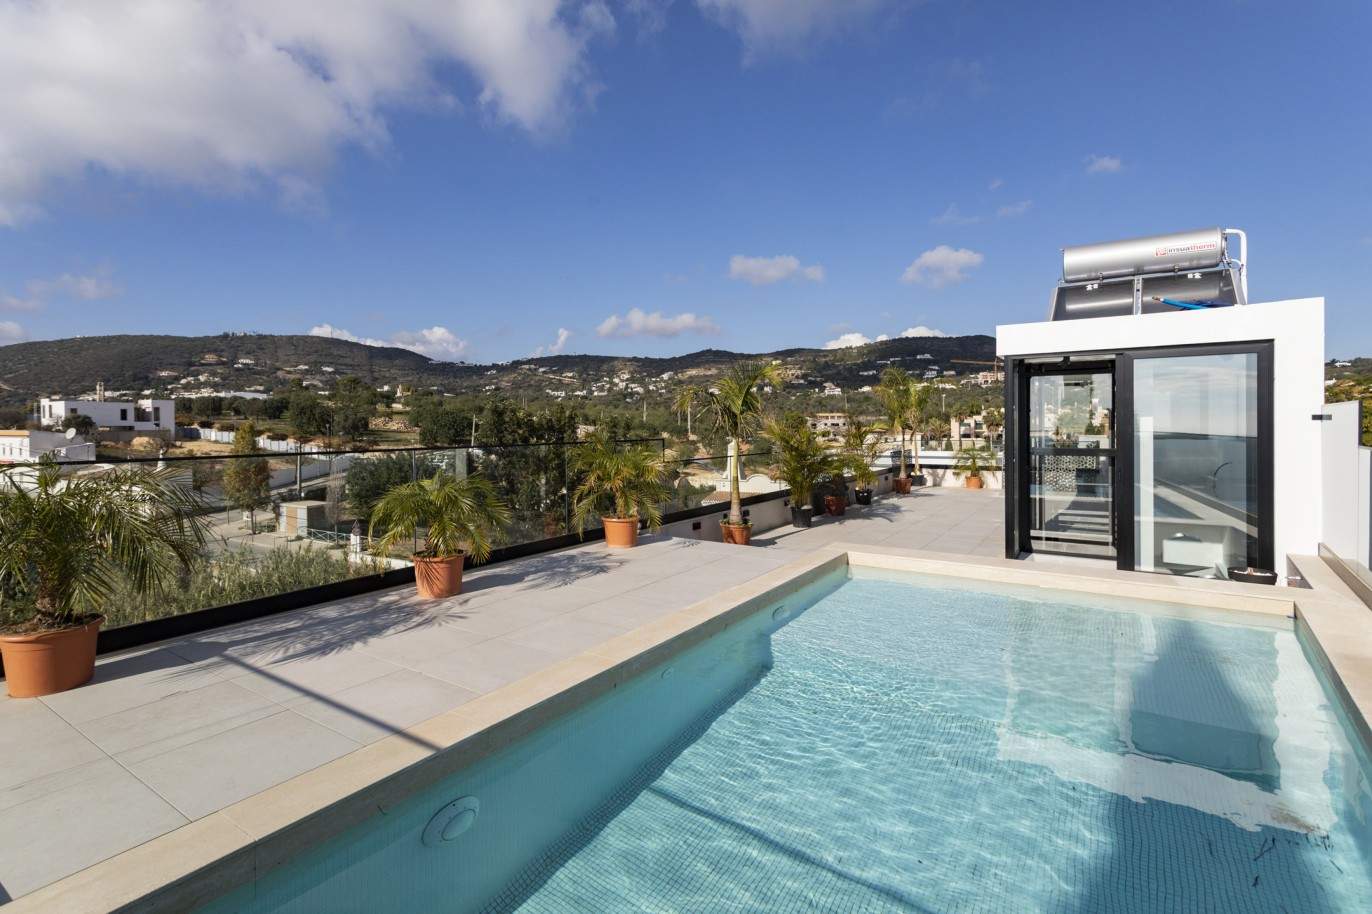 3 Bedroom Villa, with swimming pool, for sale in Santa Barbara de Nexe, Algarve_213420